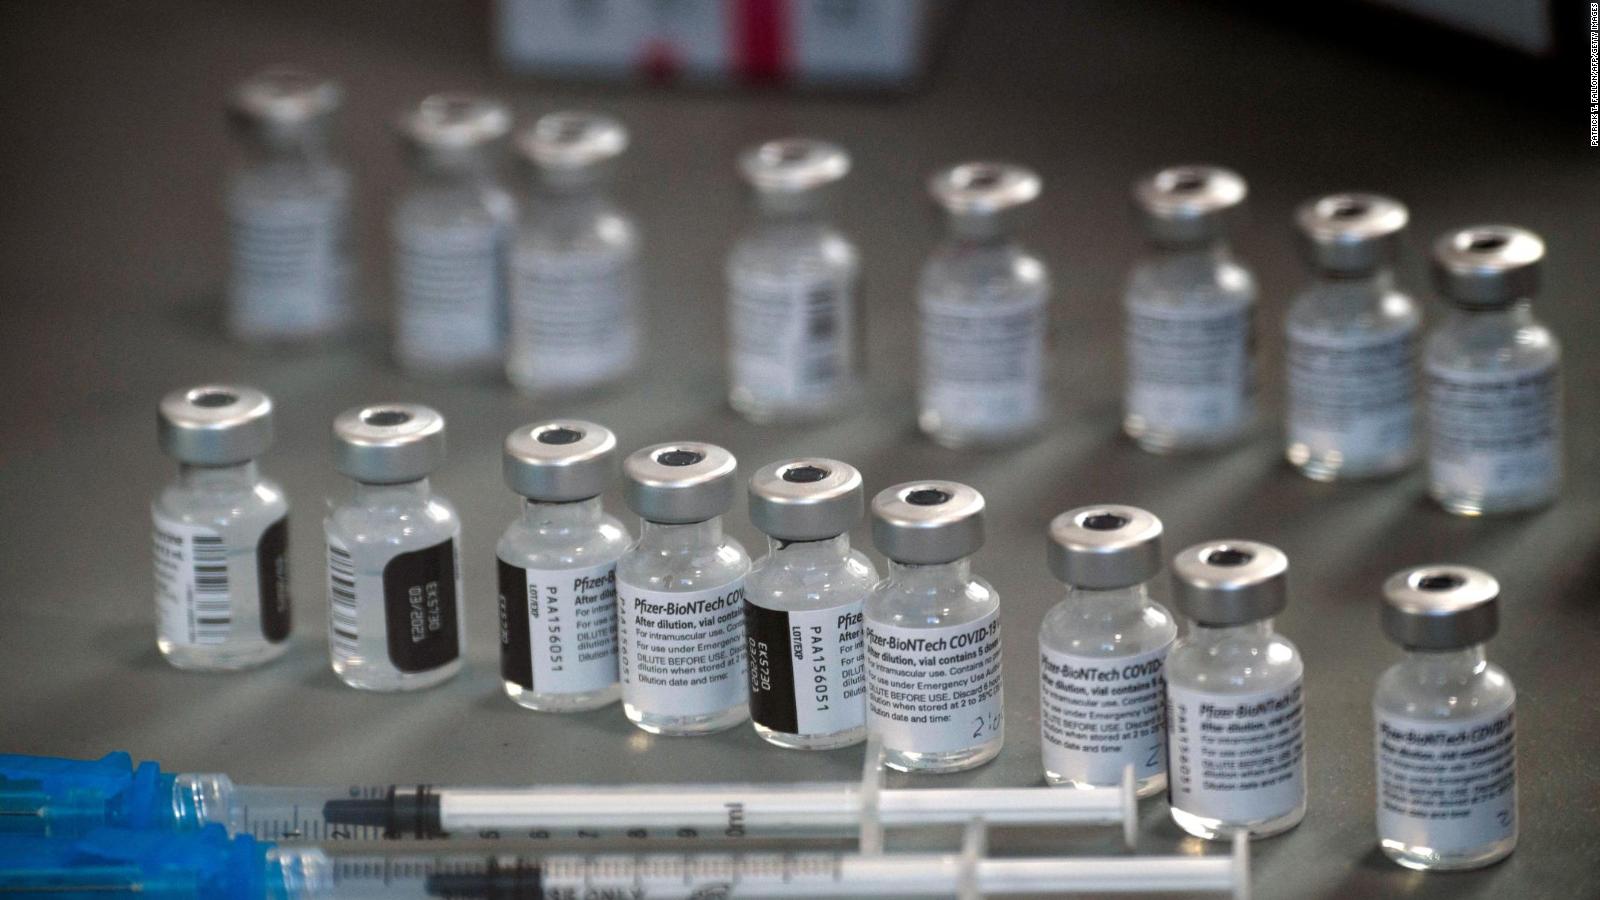 Pfizer avanza en vacuna contra covid-19 para niños